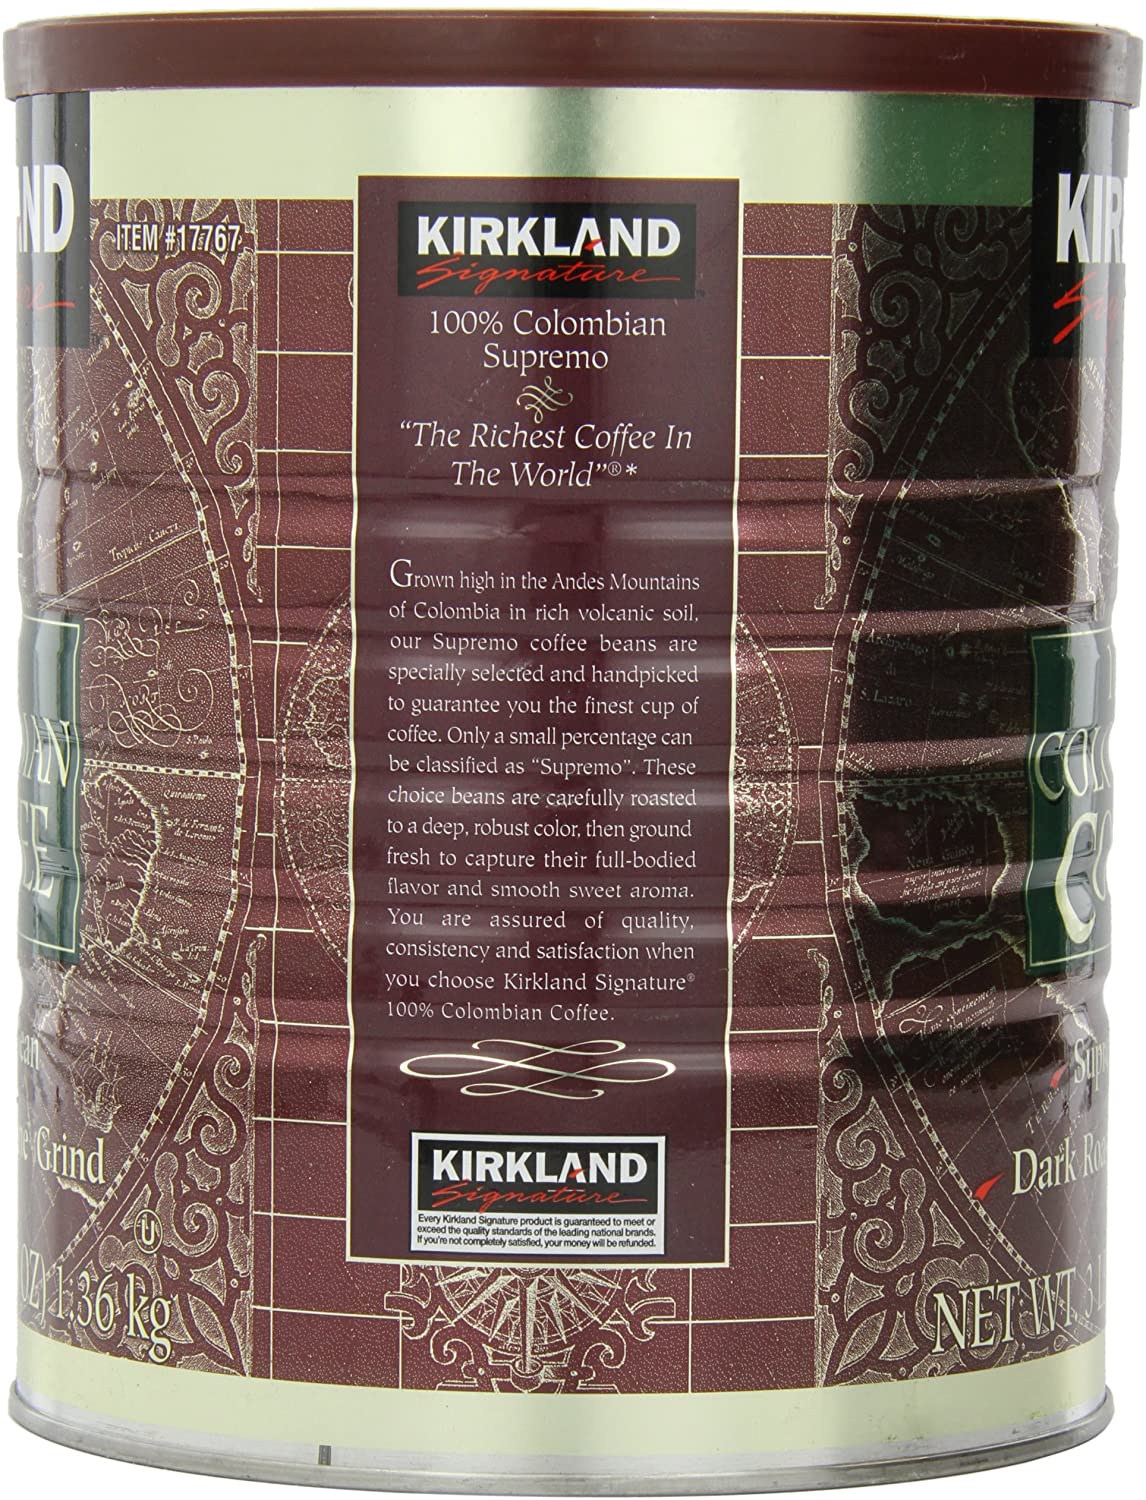 Kirkland Signature Ground Coffee, Fine Grind Kirkland Signature 